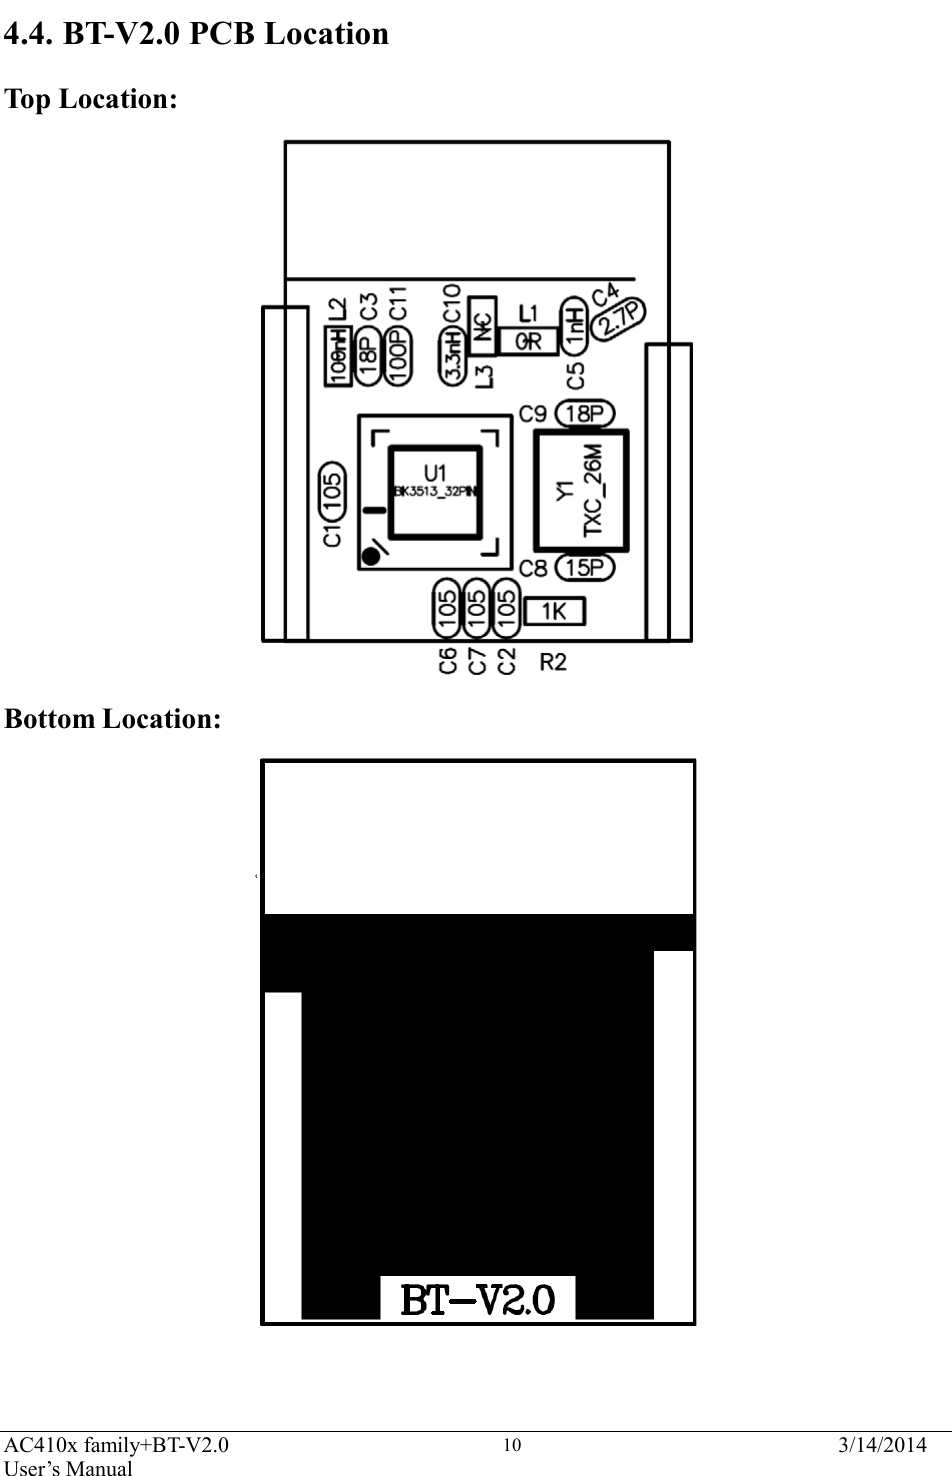  AC410x family+BT-V2.0 User’s Manual 3/14/2014 10                       4.4. BT-V2.0 PCB Location  Top Location:                            Bottom Location: 